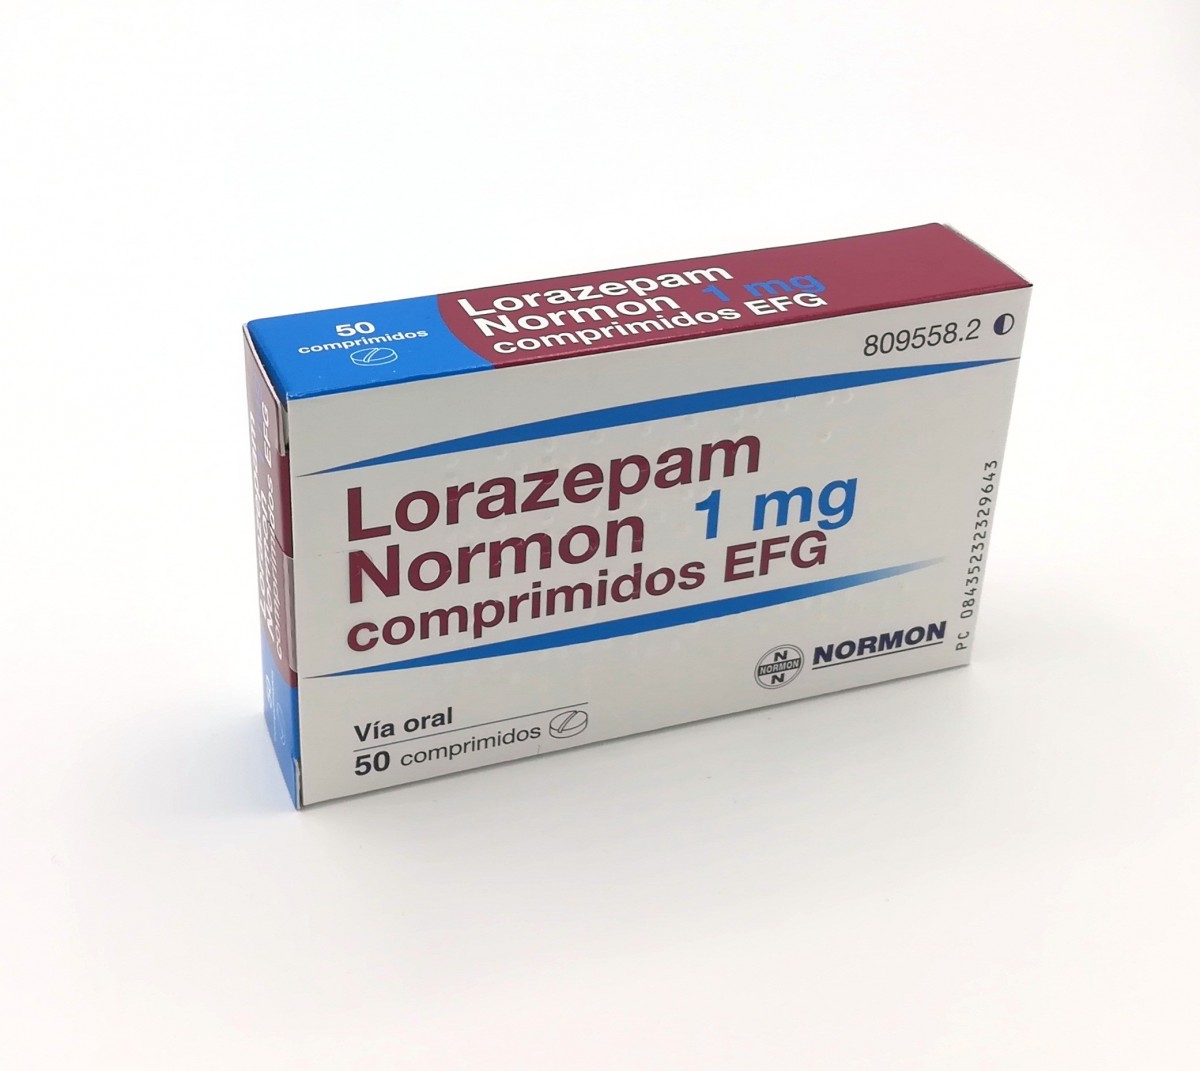 LORAZEPAM NORMON 1 mg COMPRIMIDOS EFG, 50 comprimidos fotografía del envase.